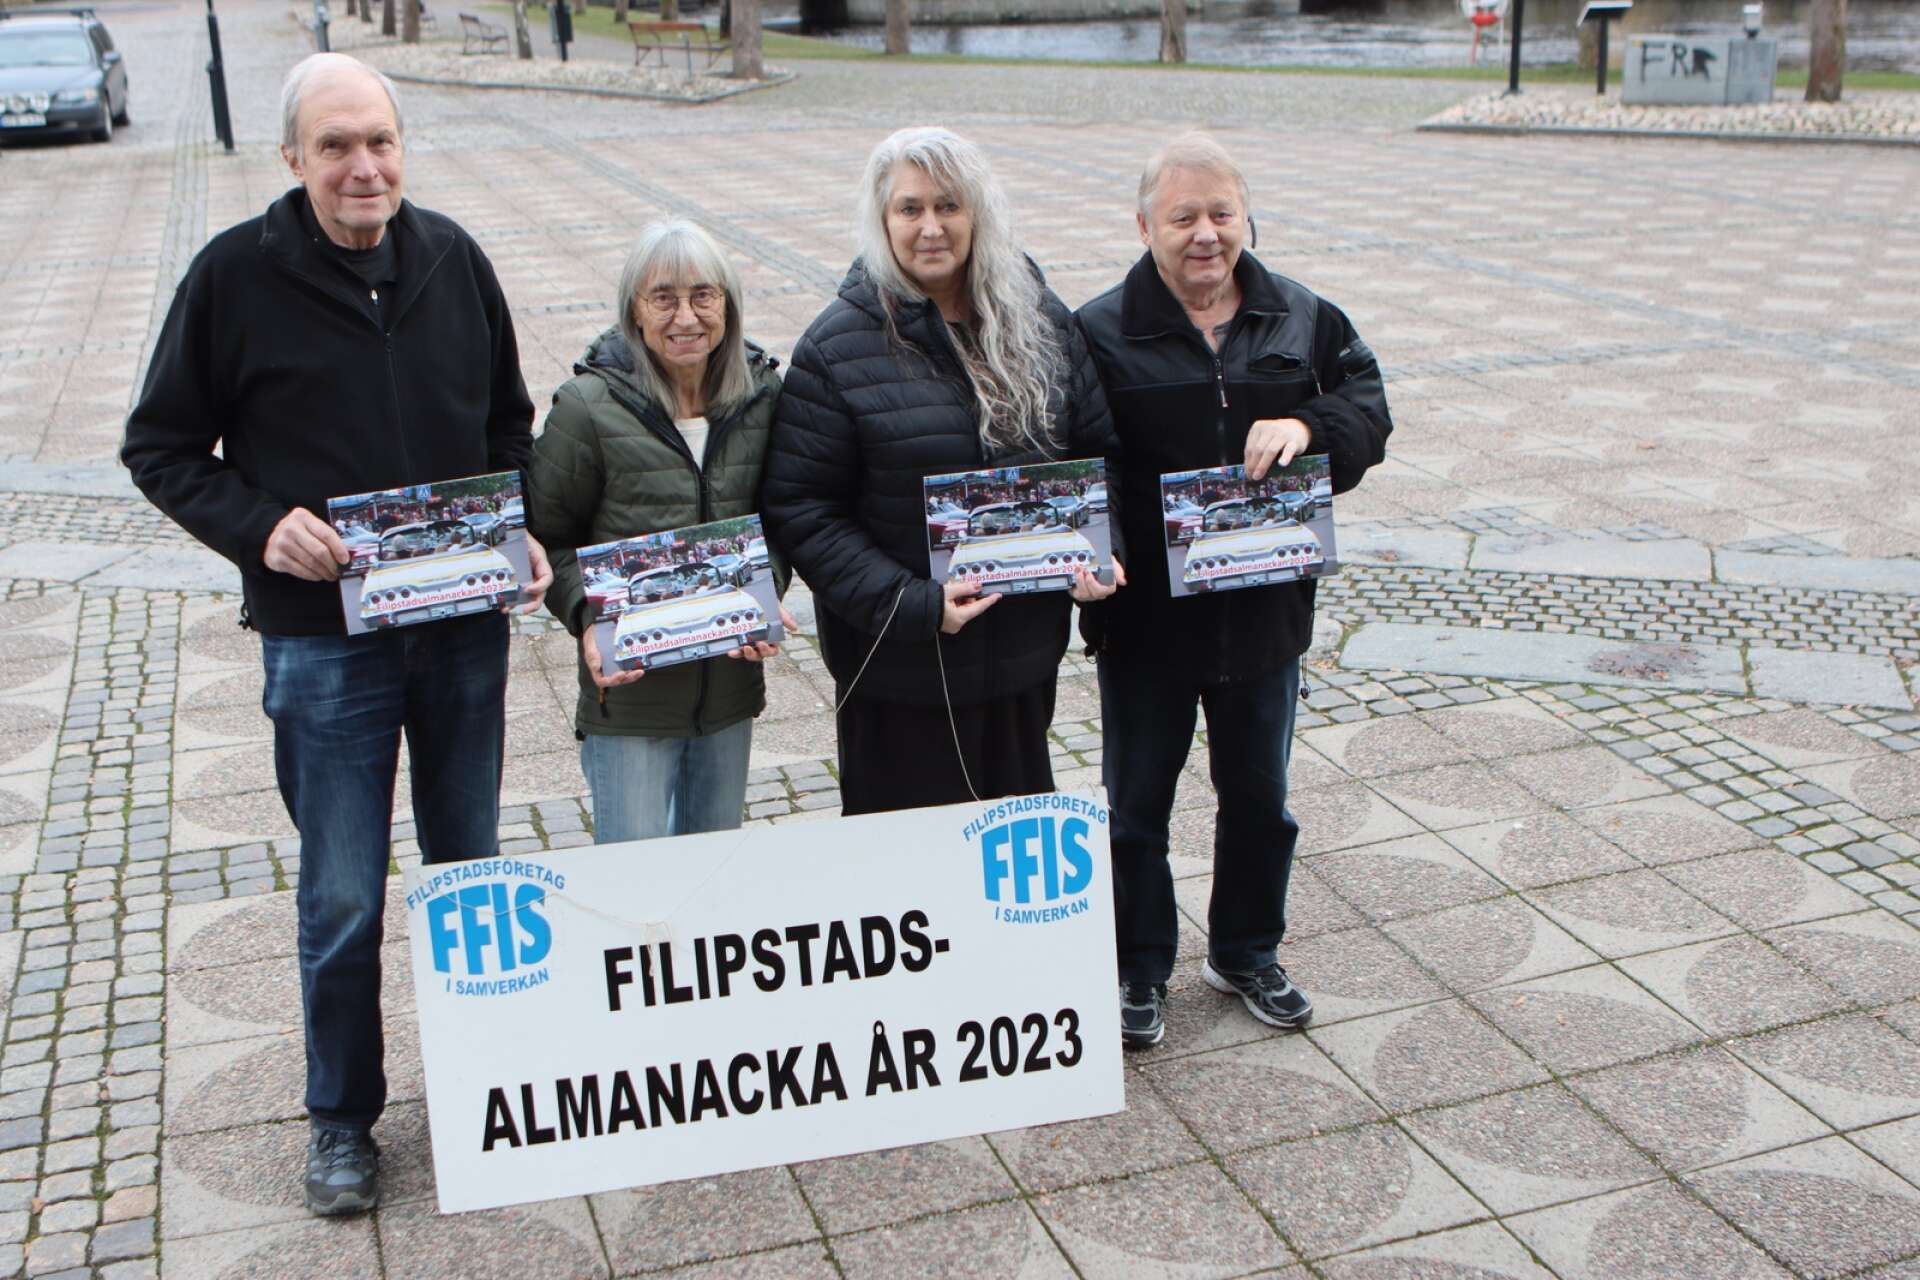  Ove Svensson, Karin Fröde Olsson, Marina Tallberg och Tommy Pettersson har alla jobbat med almanackan.